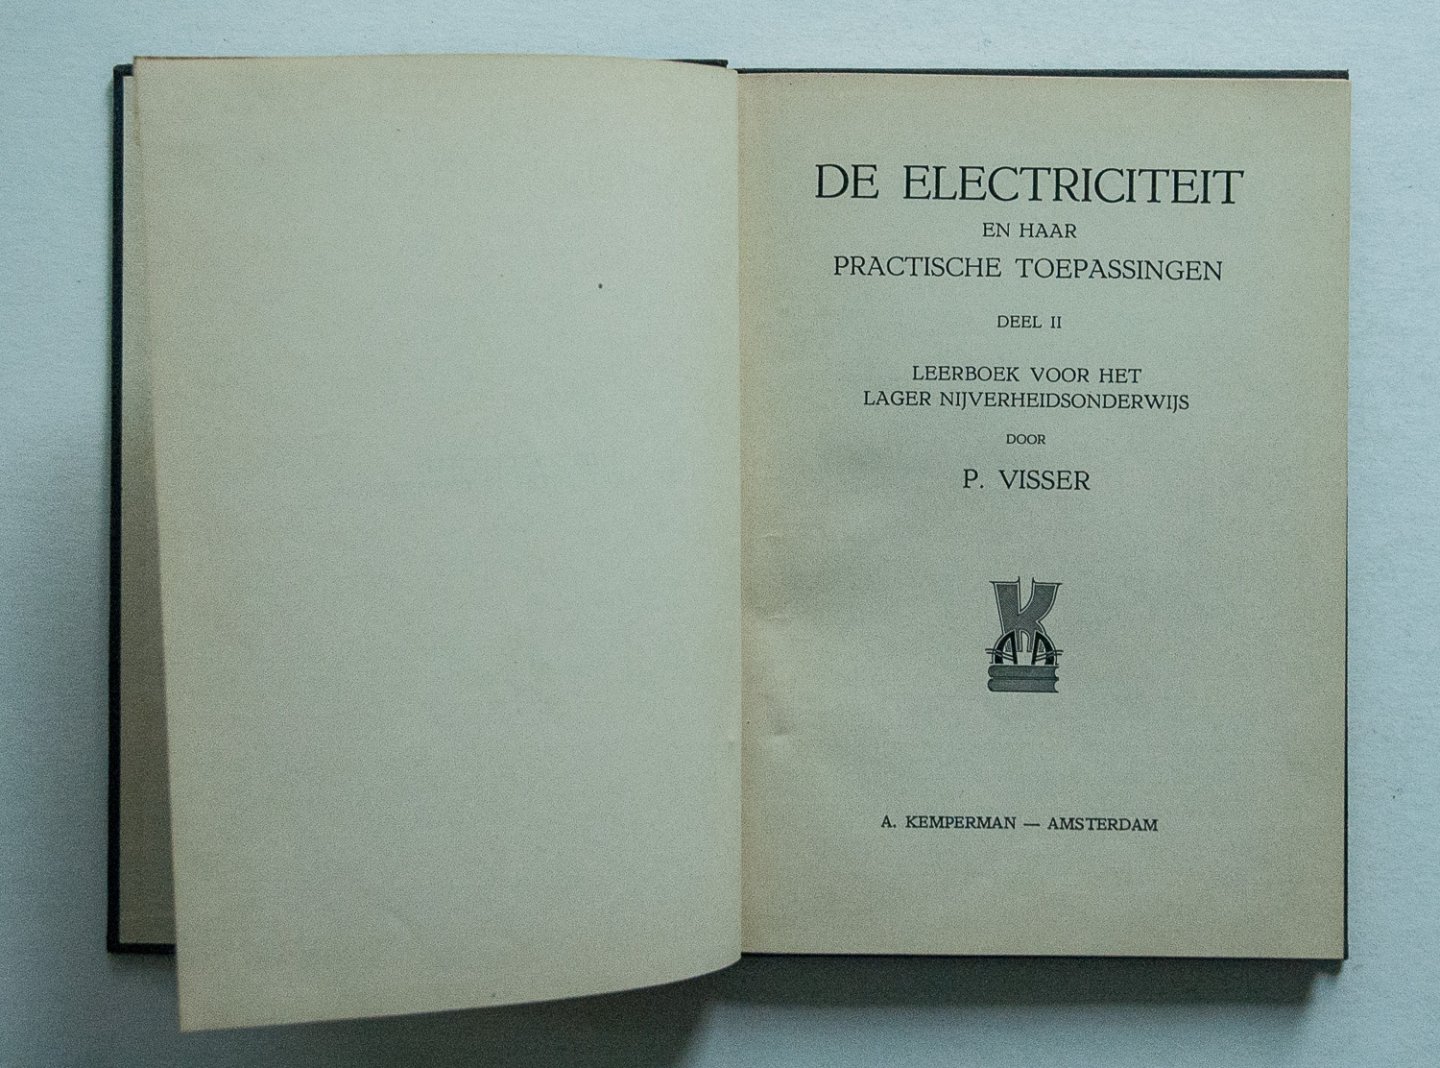 Visser, P. - De electriciteit en haar practische toepassingen - leerboek voor het lager nijverheidsonderwijs- Deel 2